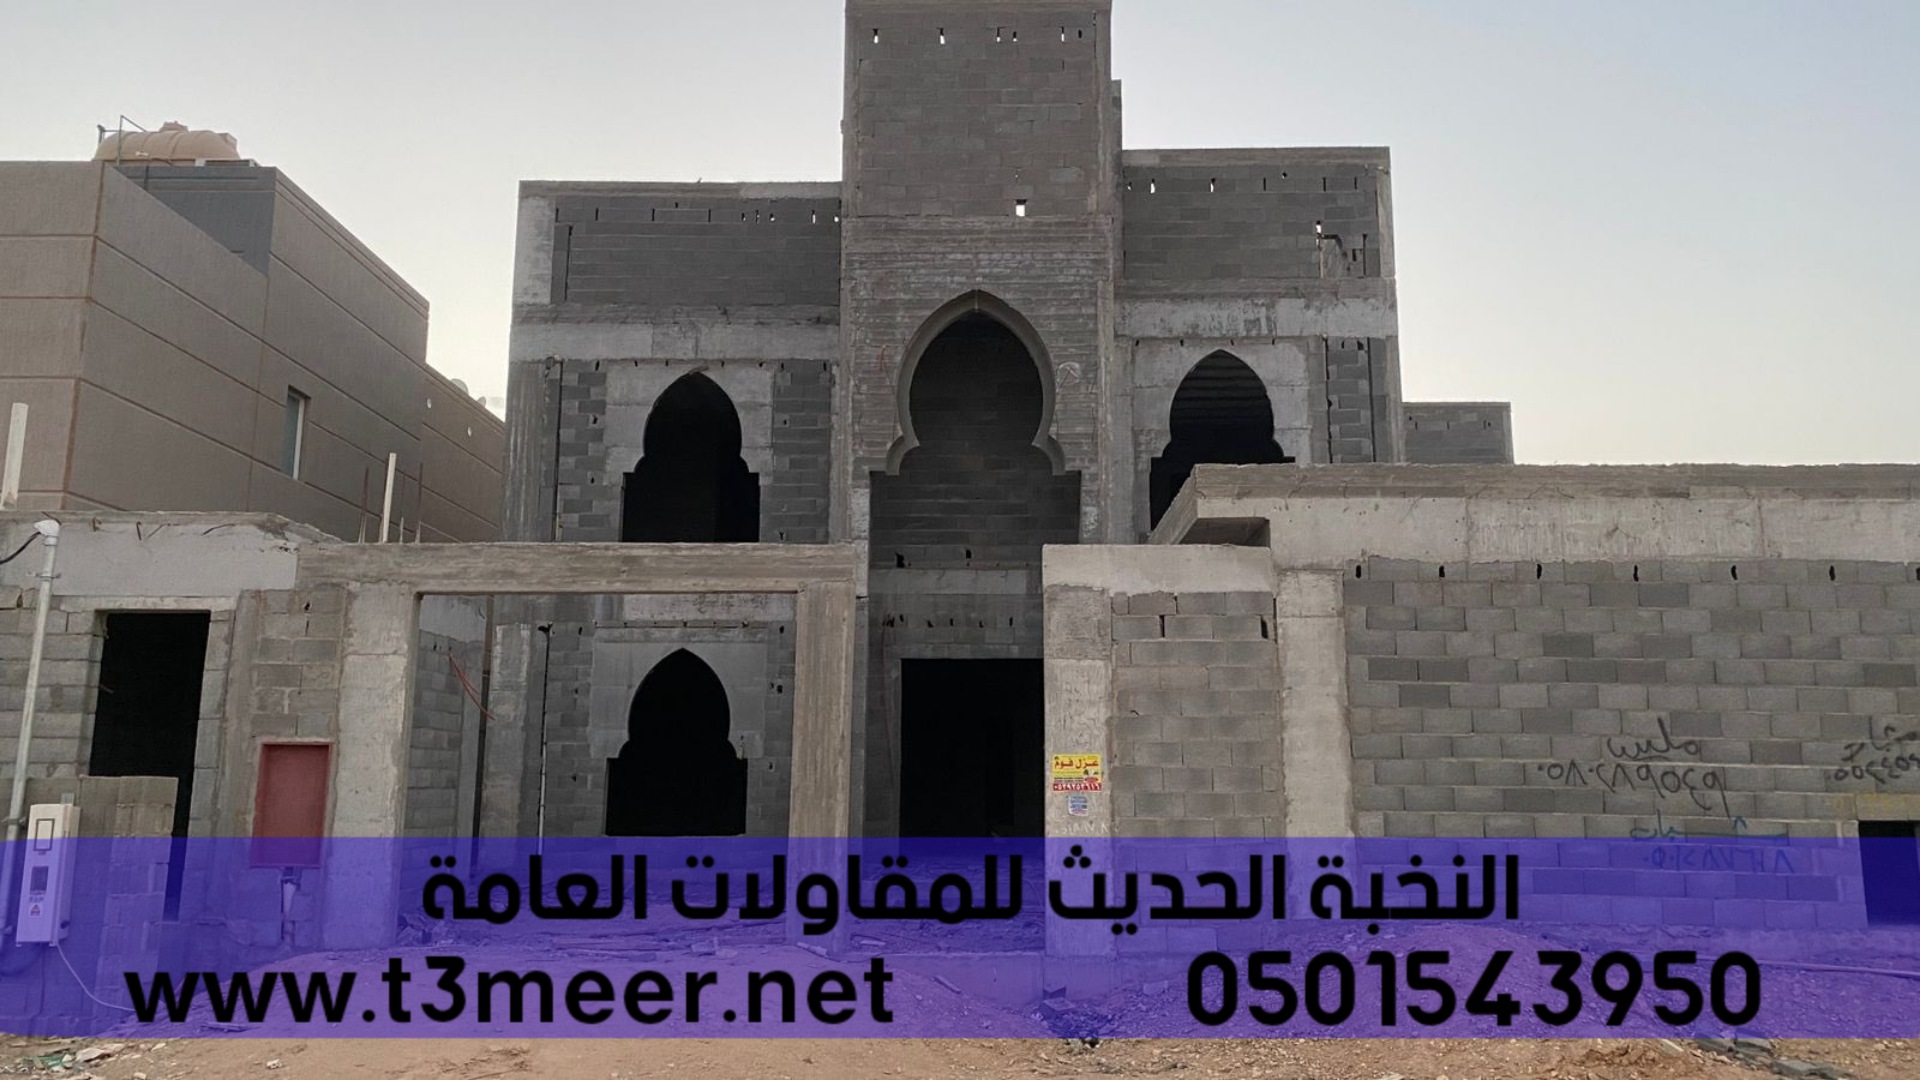 بناء عظم بالمواد او بدون في الرياض , 0501543950 P_2431sh7w67